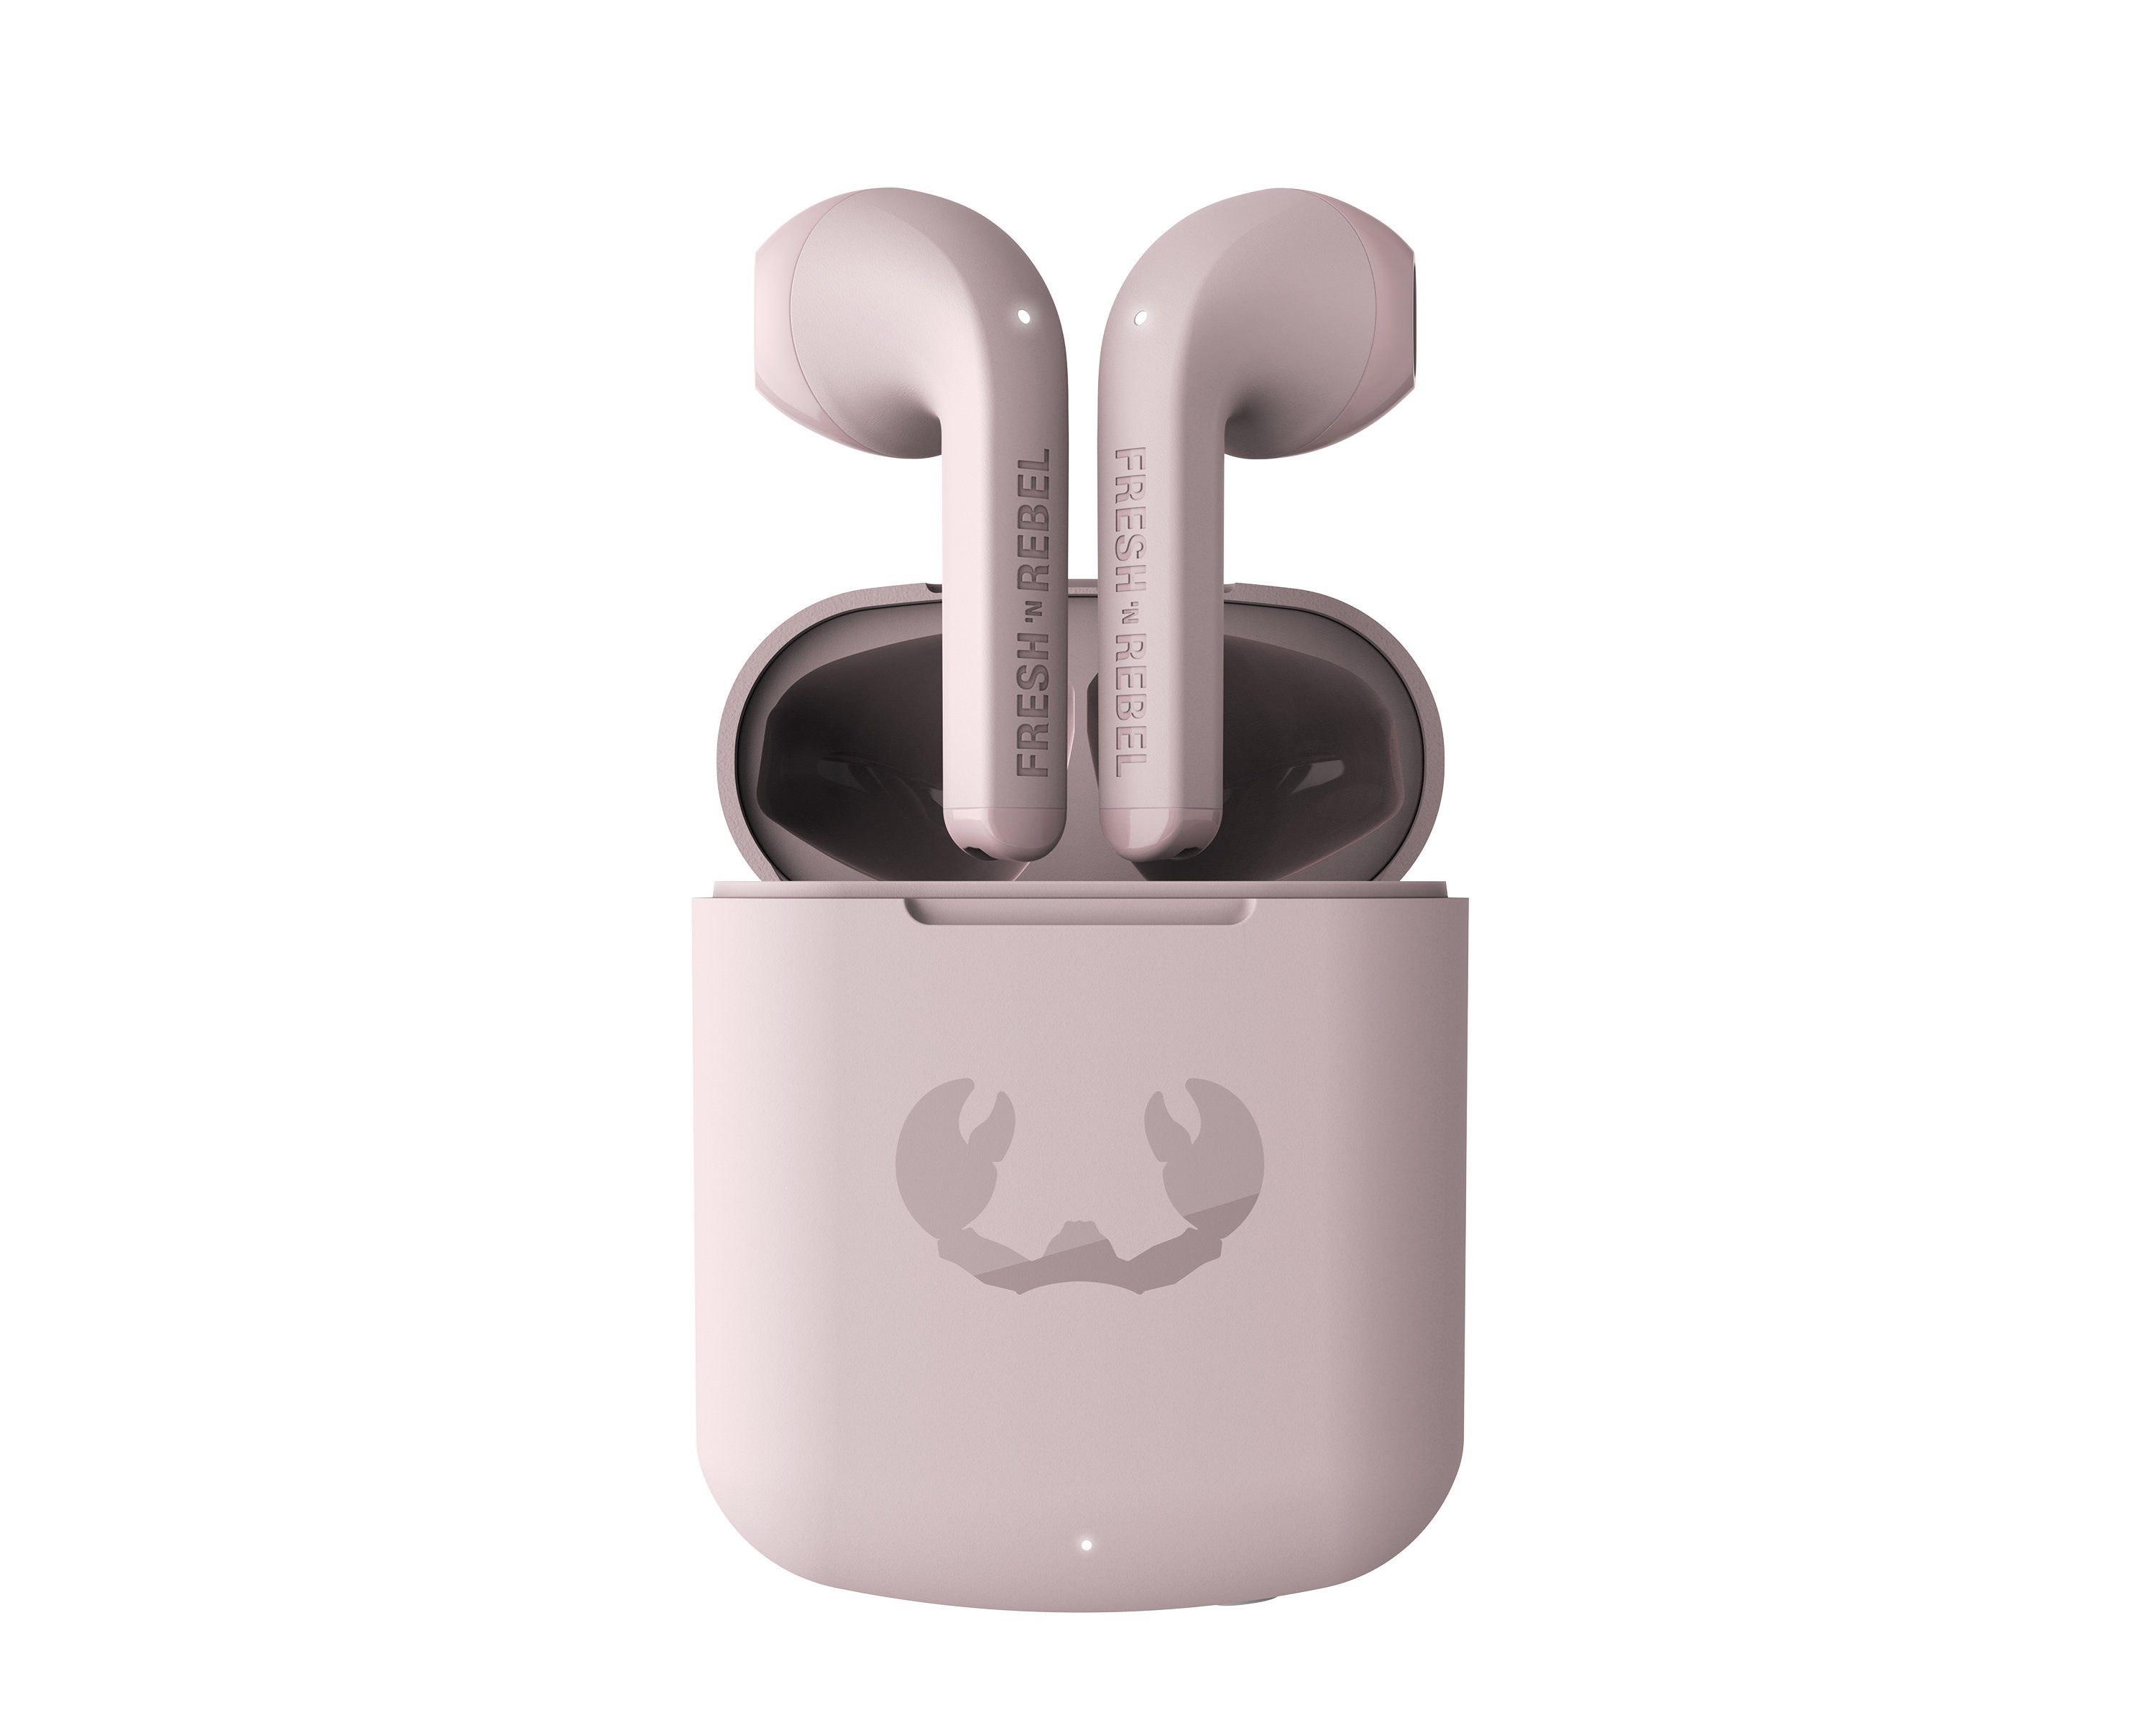 Auto-Kopplung) Smokey Kopfhörer Touch-Control-Steuerung, Twins Core (Dual-Master-Funktion, Pink Rebel Fresh´n